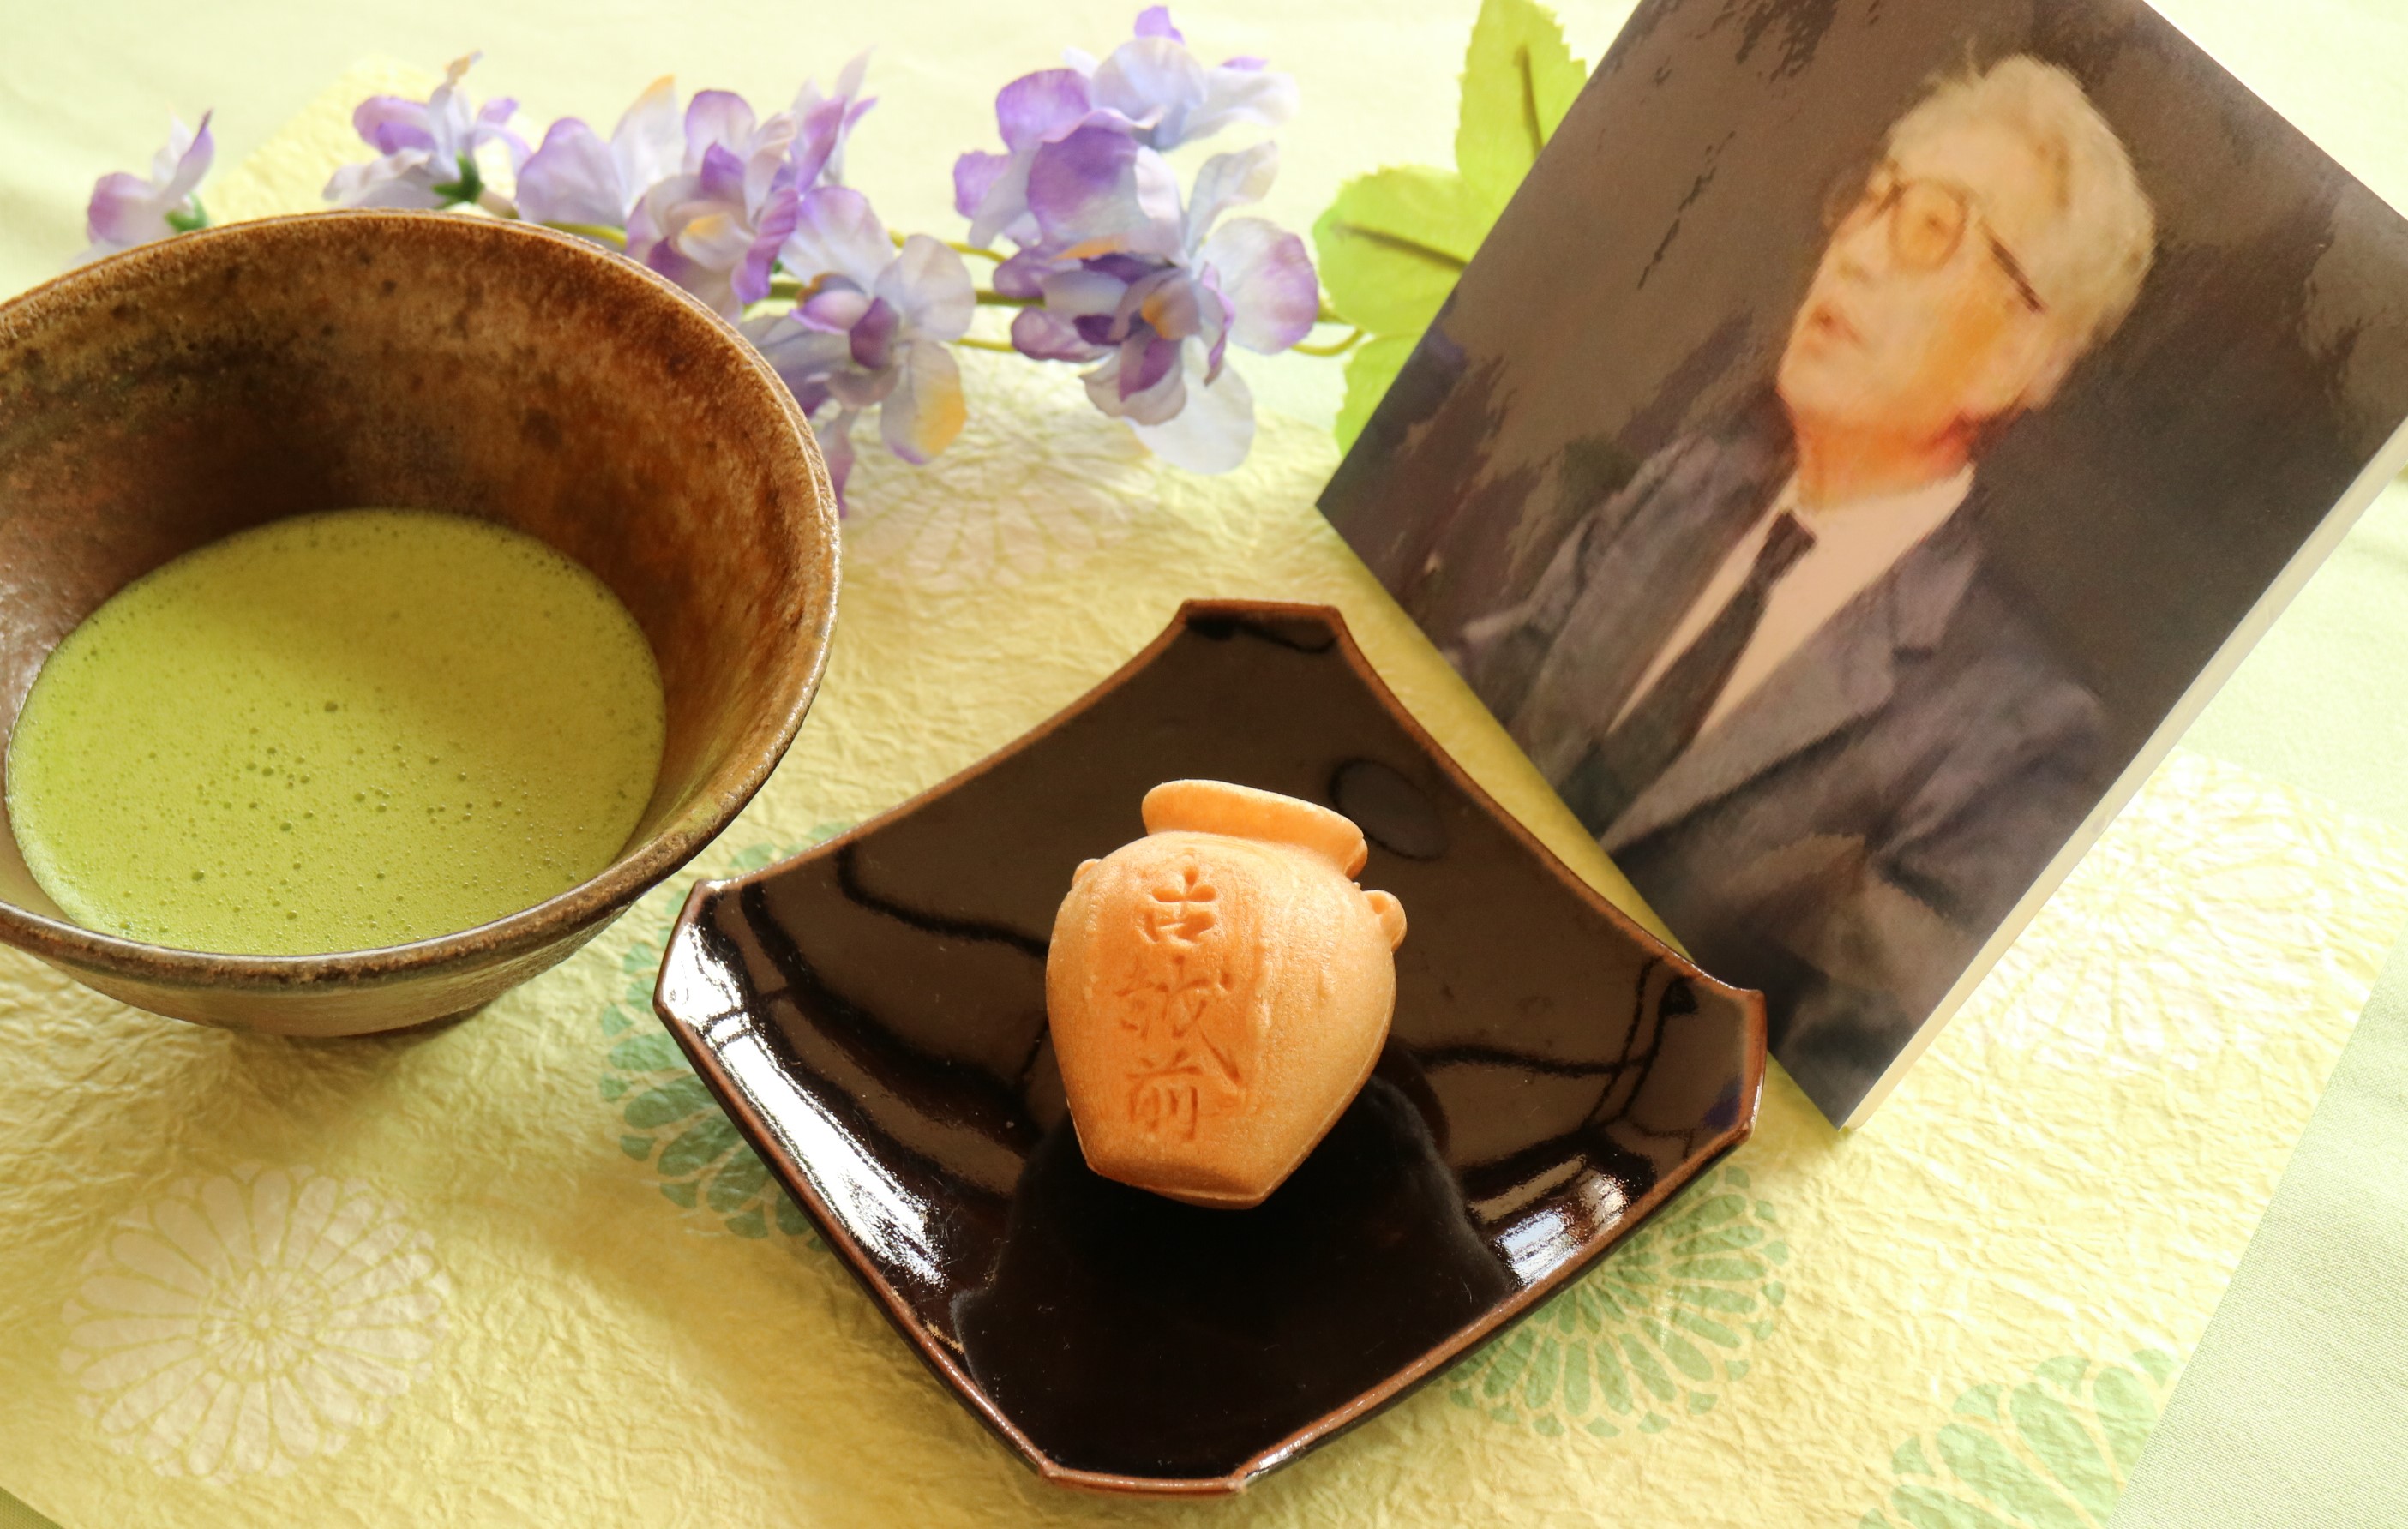 水野九右衛門先生 生誕100年お祝いの呈茶